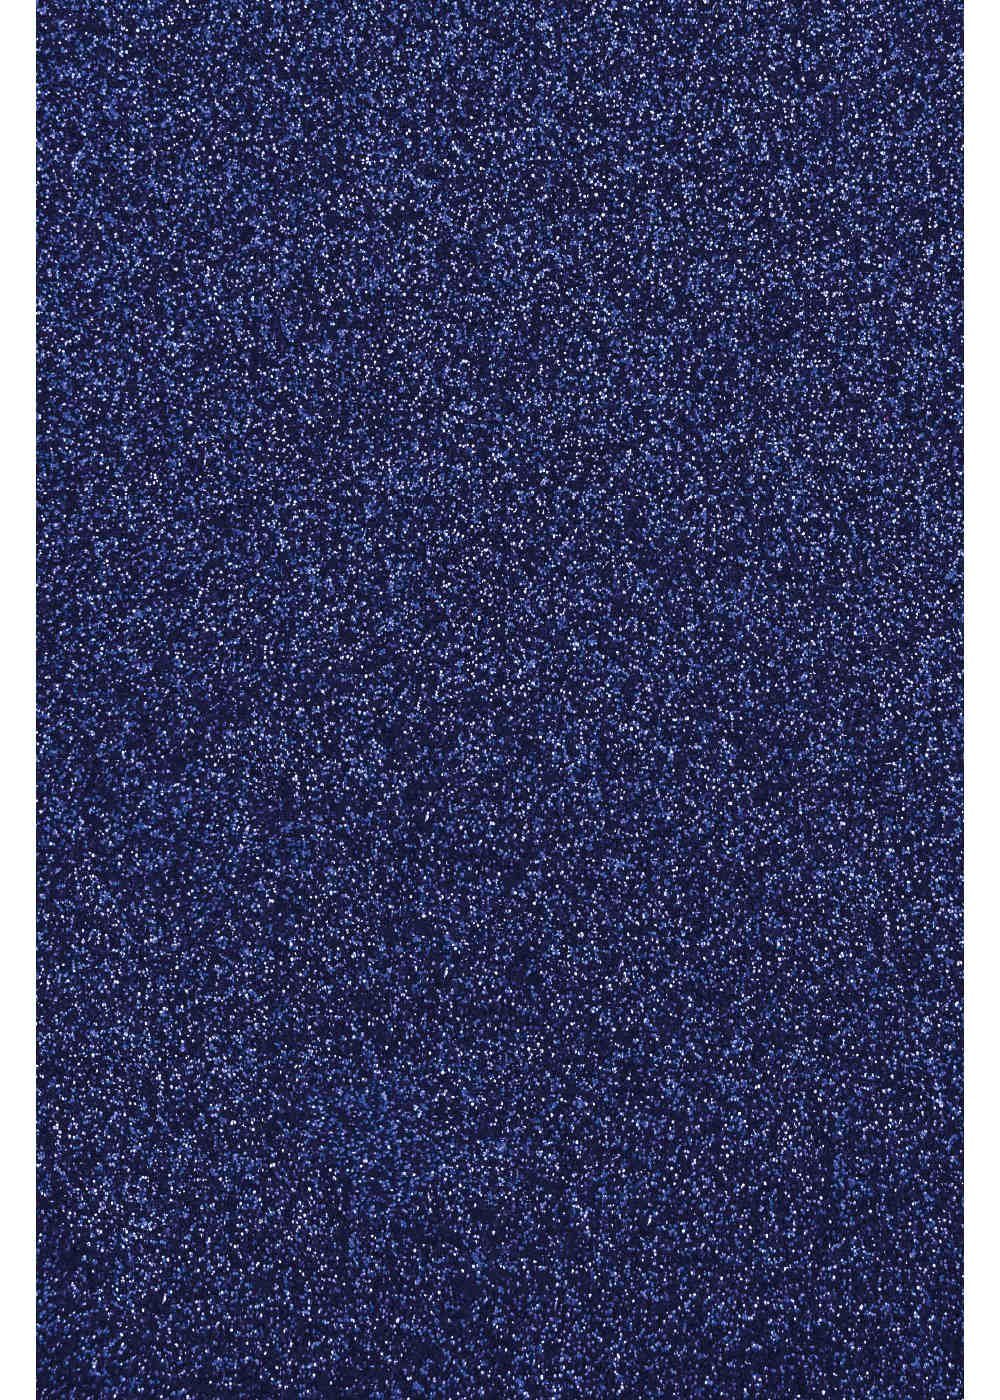 Hilltop Transparentpapier Glitzer Aufbügeln, Royal Plottern Transferfolie/Textilfolie perfekt Blue zum zum